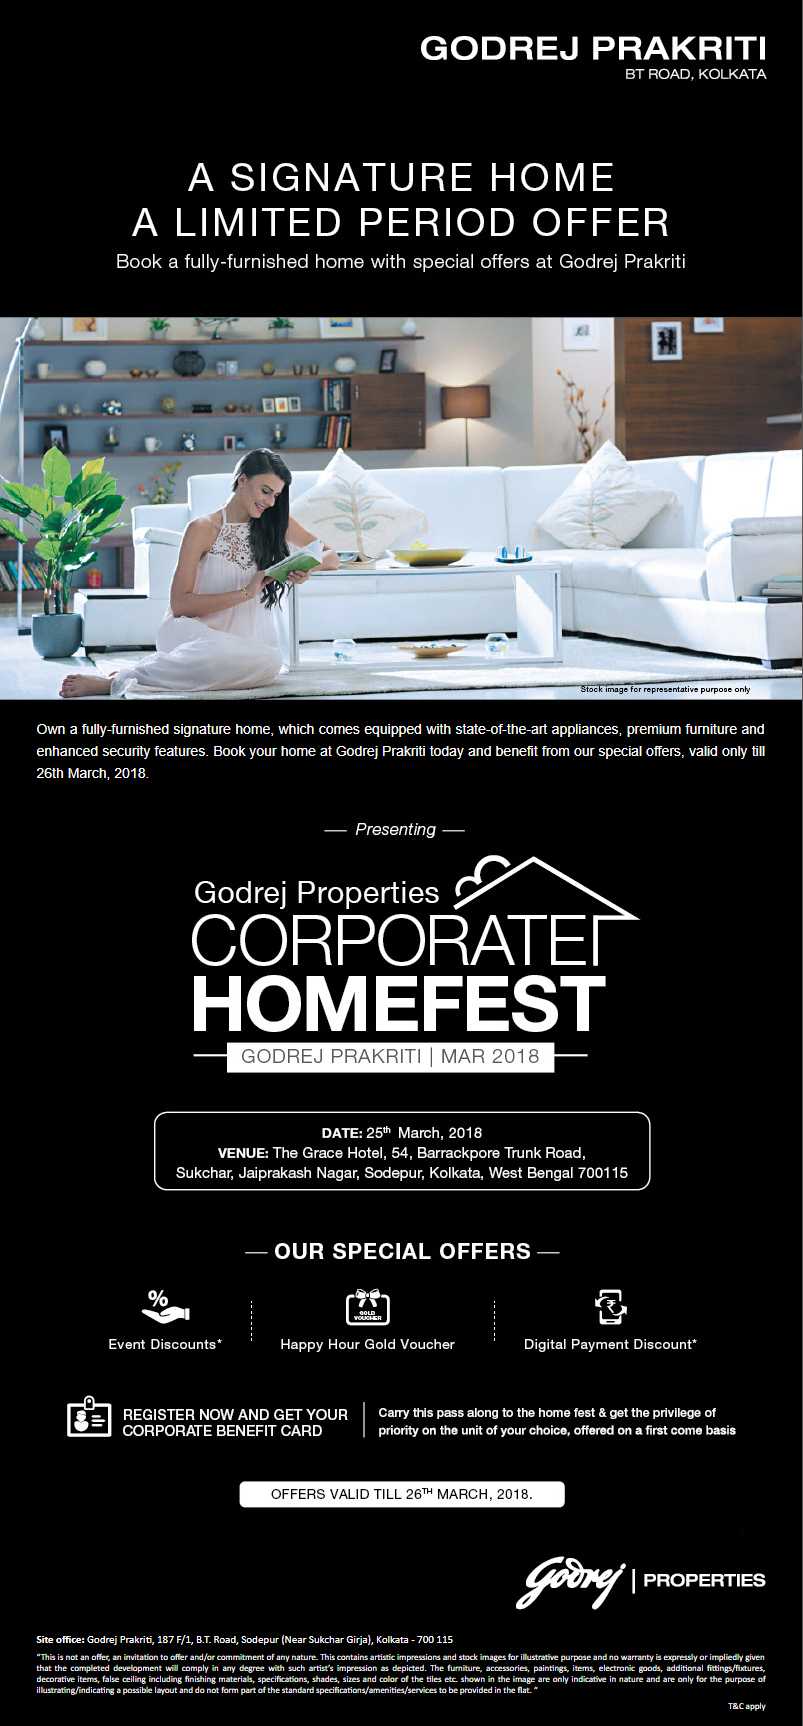 Presenting Godrej Properties Corporate Homefest in Kolkata